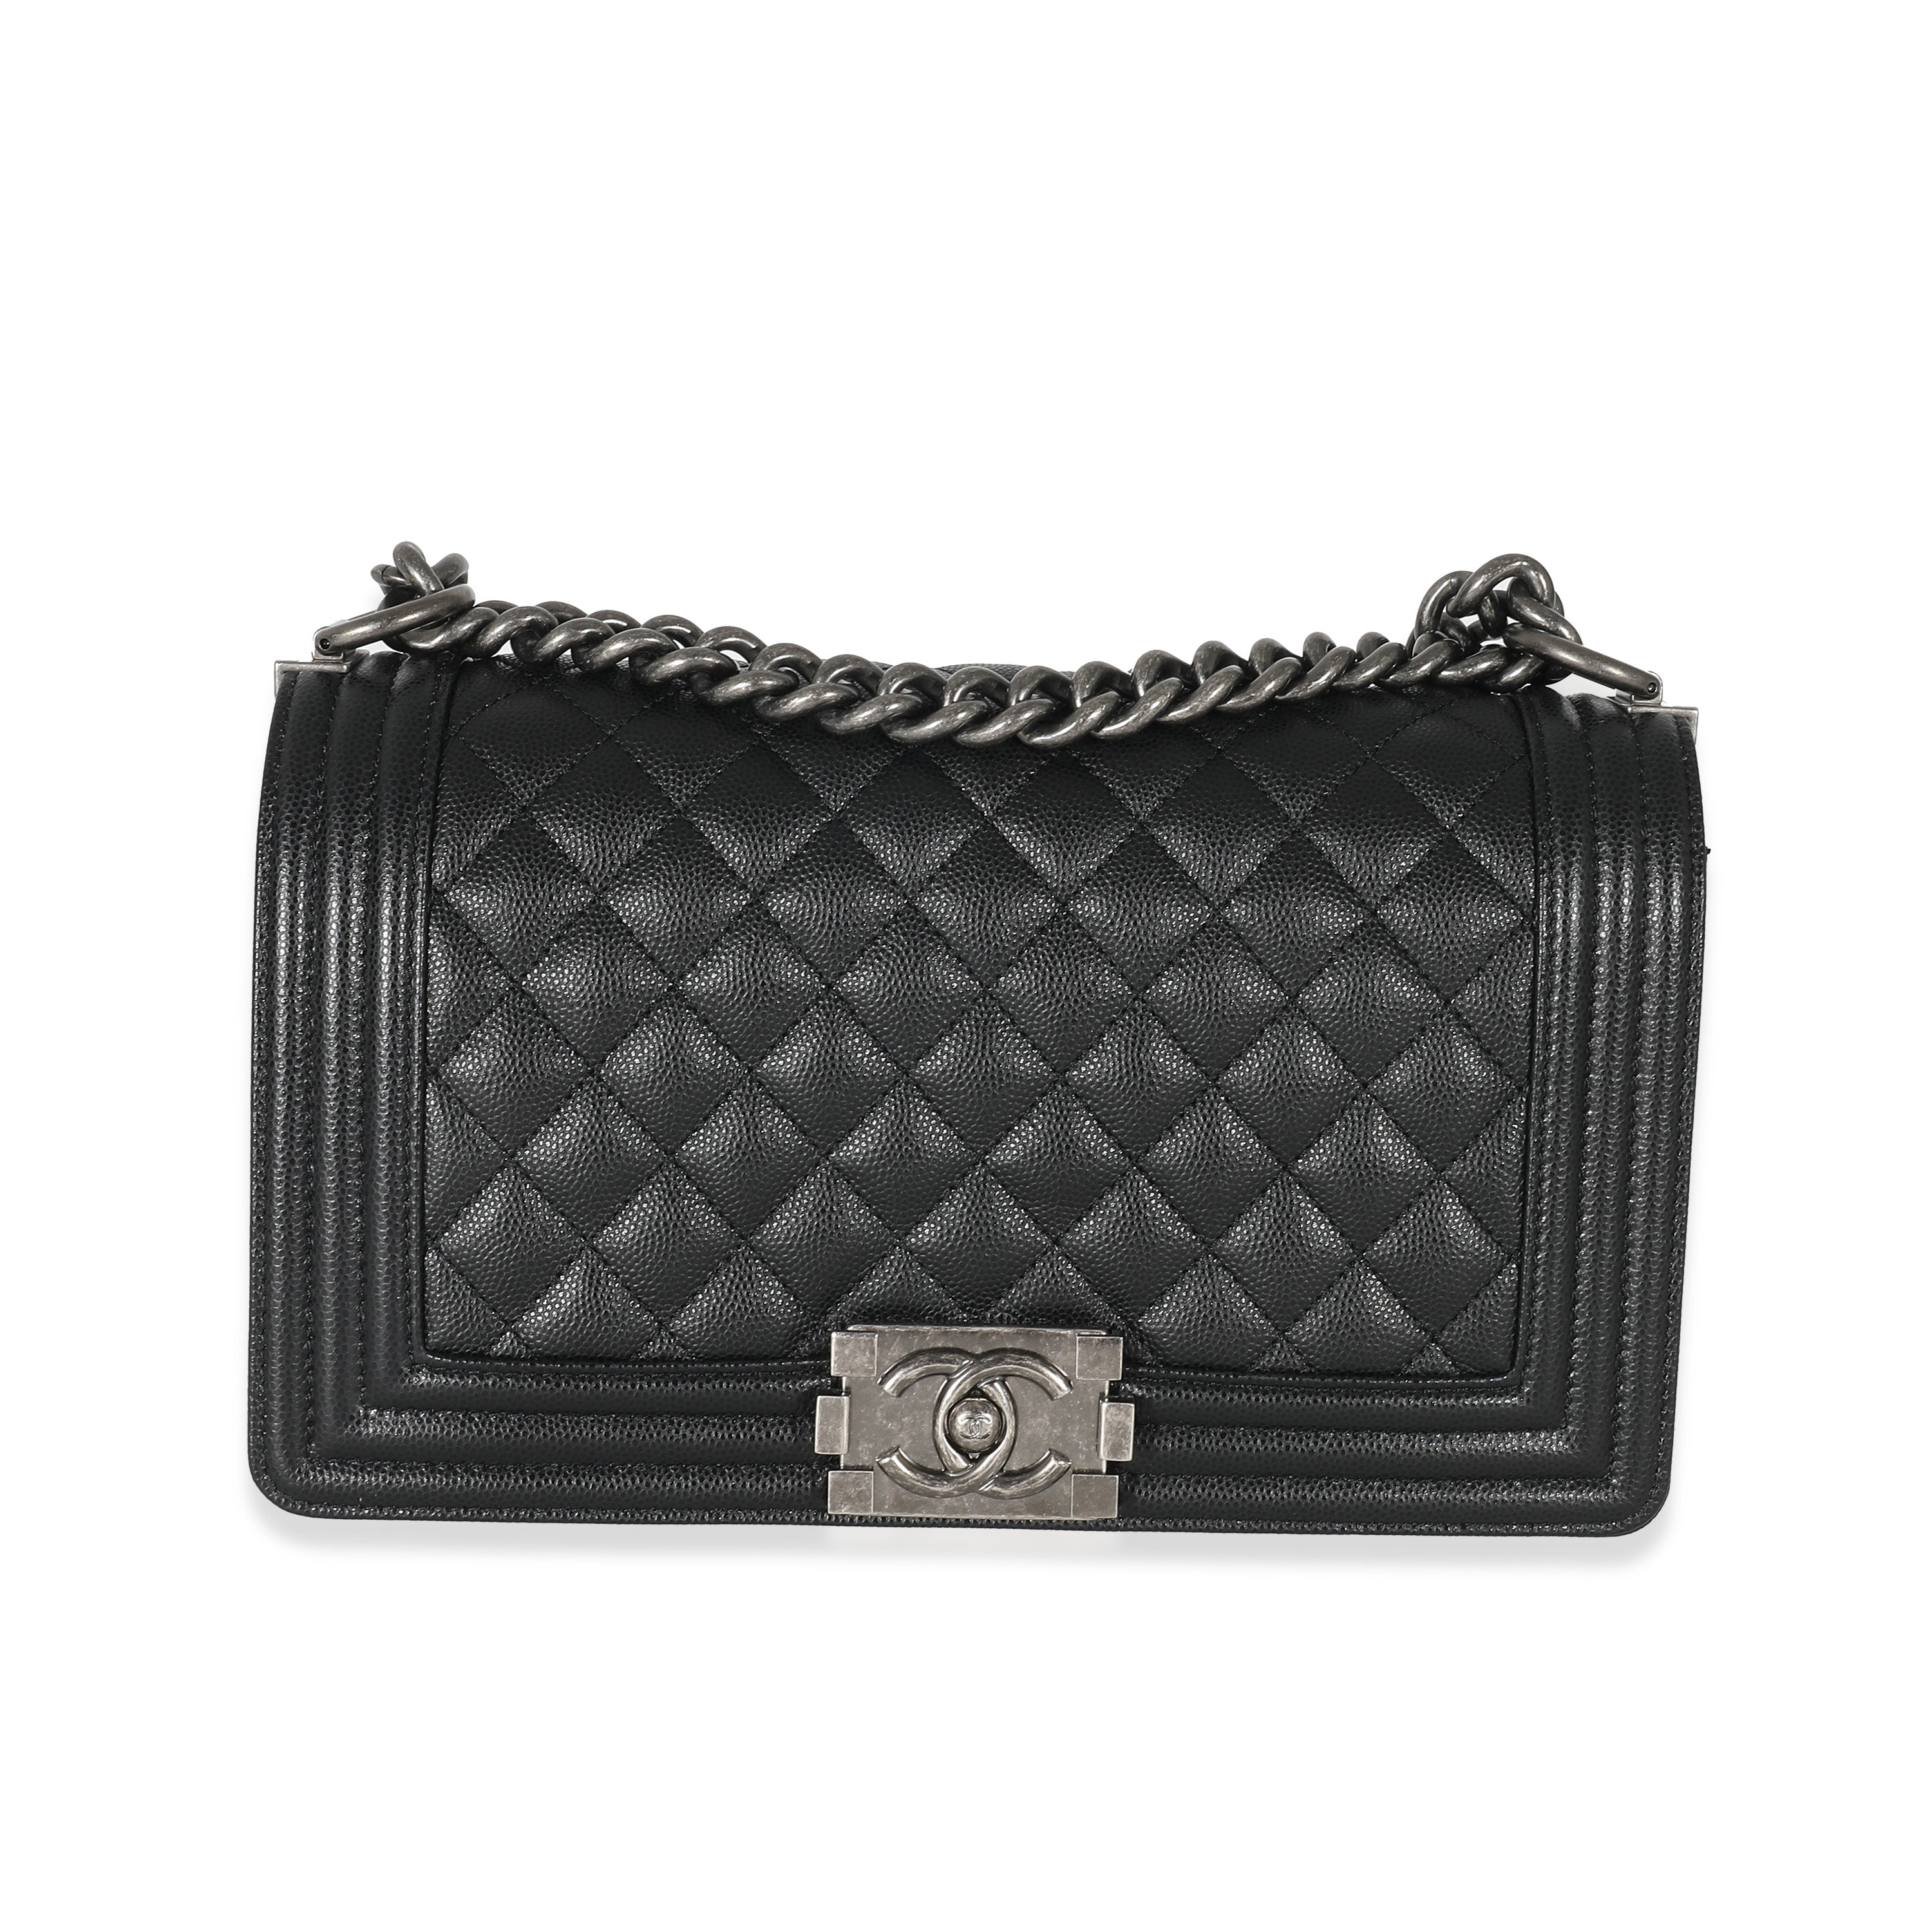 Chanel Black Quilted Caviar Medium Boy Bag, myGemma, DE